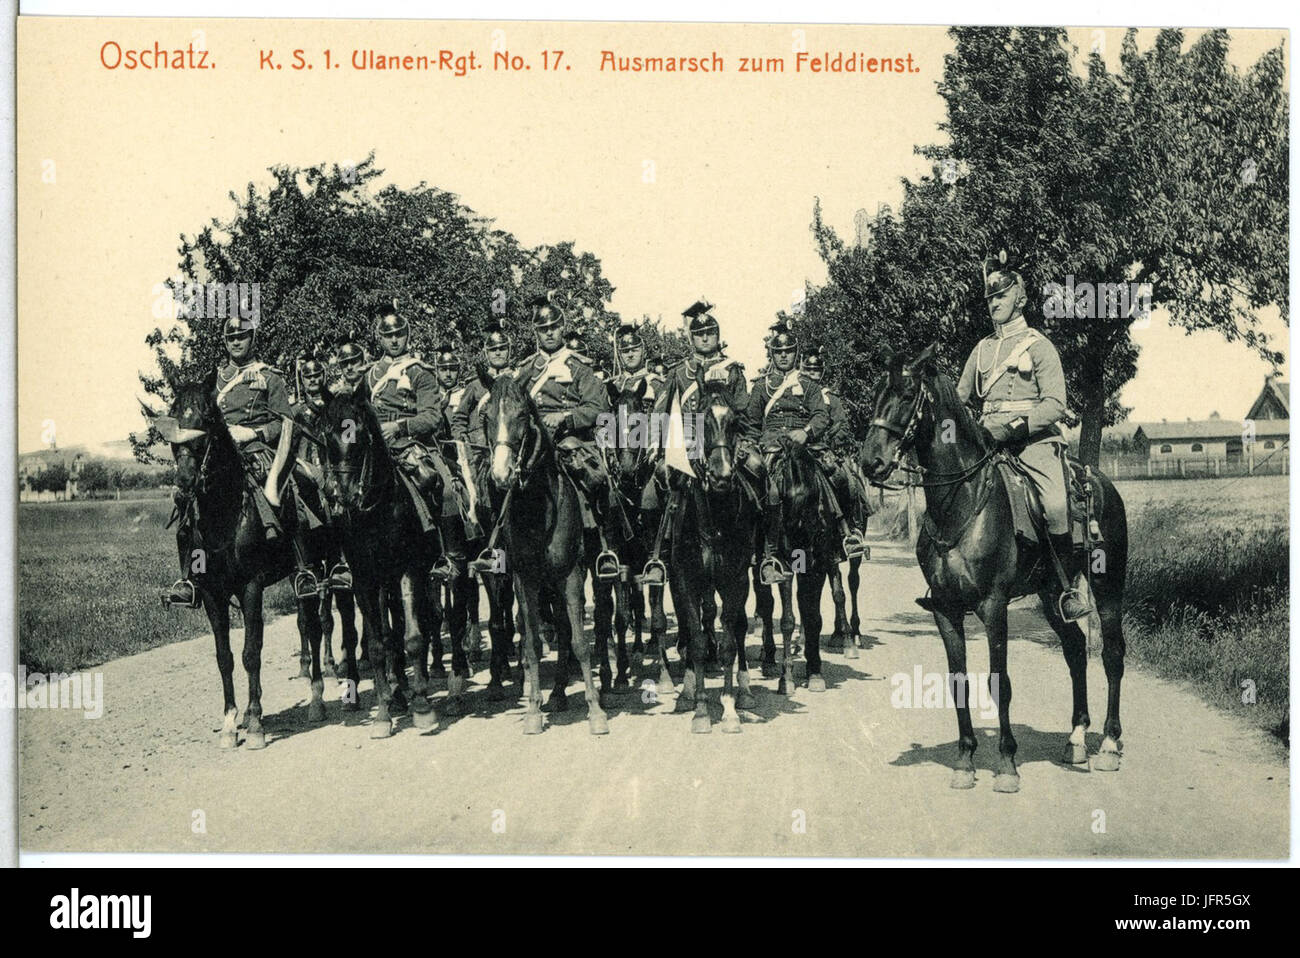 14758-Oschatz-1912-1. Königlich Sächsisches Ulanen-Regiment Nr. 17 - Ausmarsch zum Feldienst-Brück & Sohn Kunstverlag Stock Photo